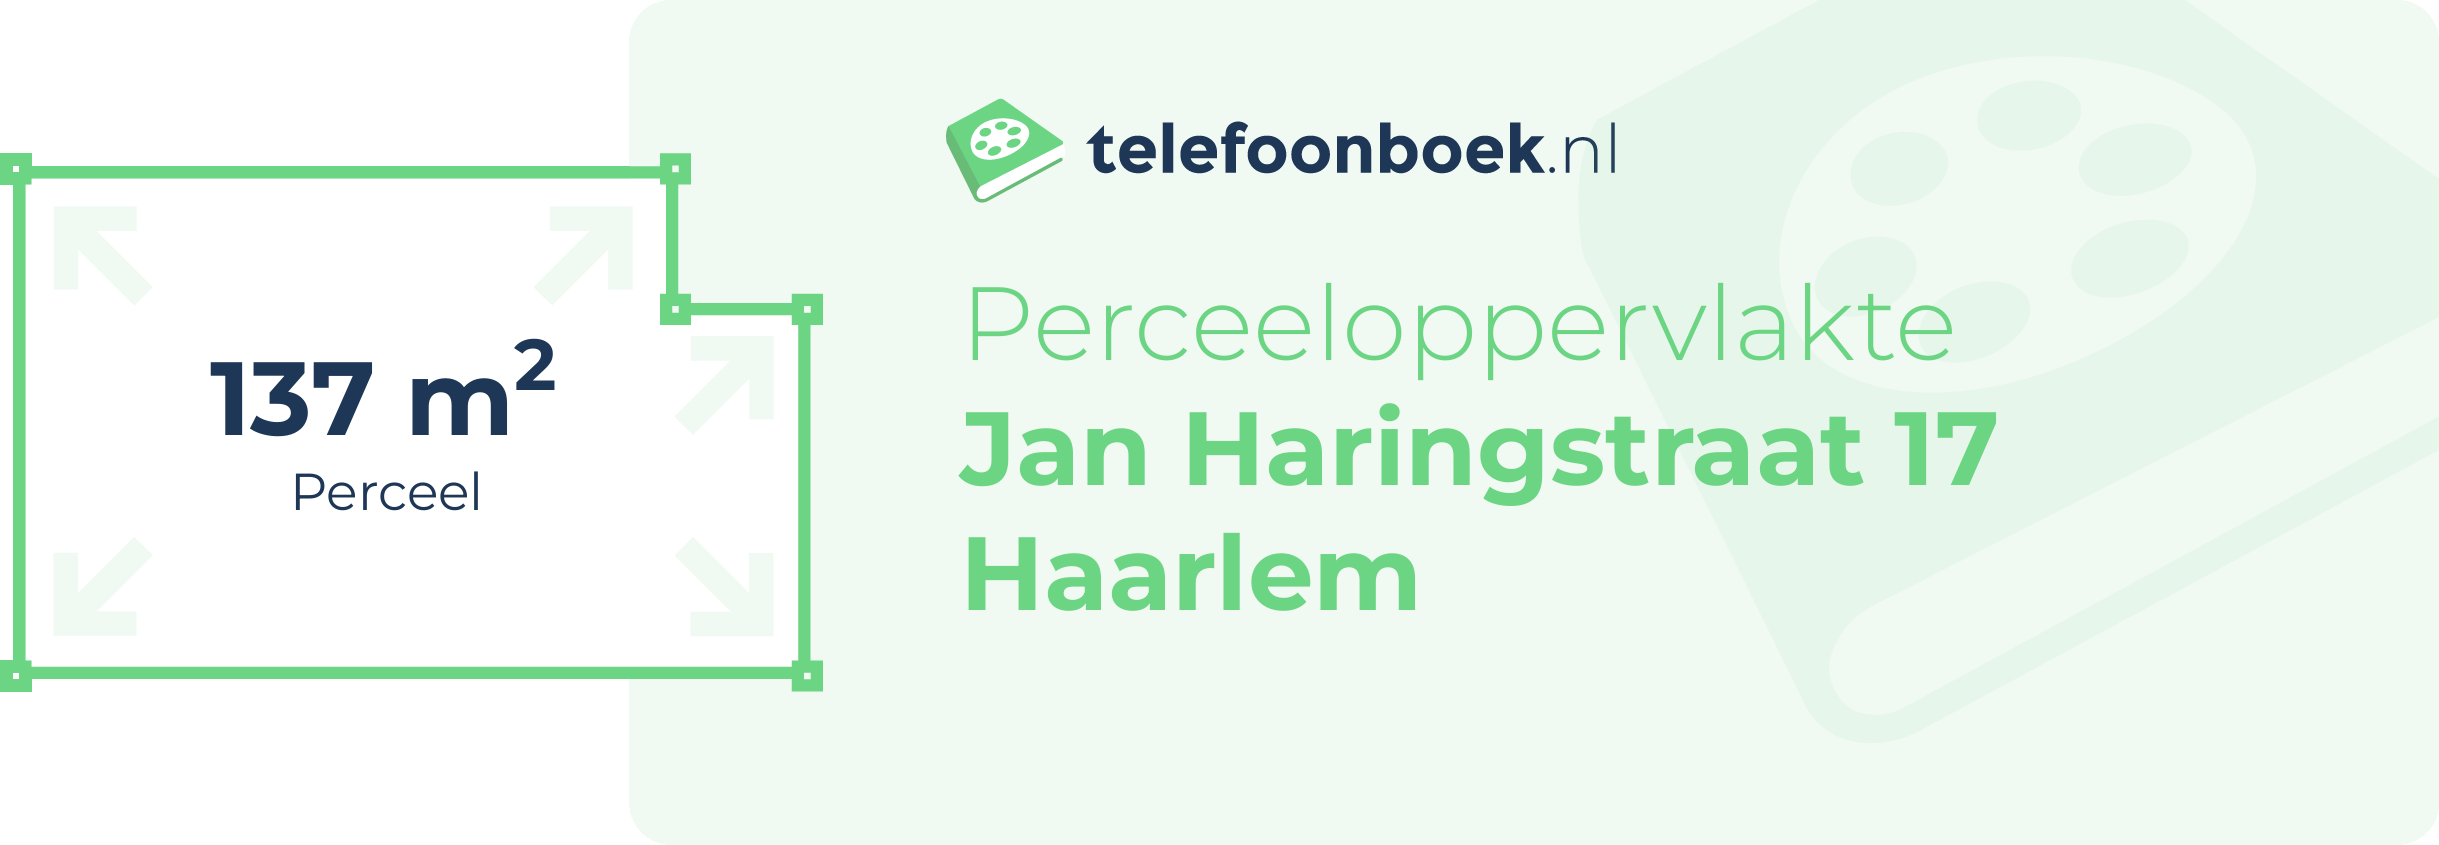 Perceeloppervlakte Jan Haringstraat 17 Haarlem